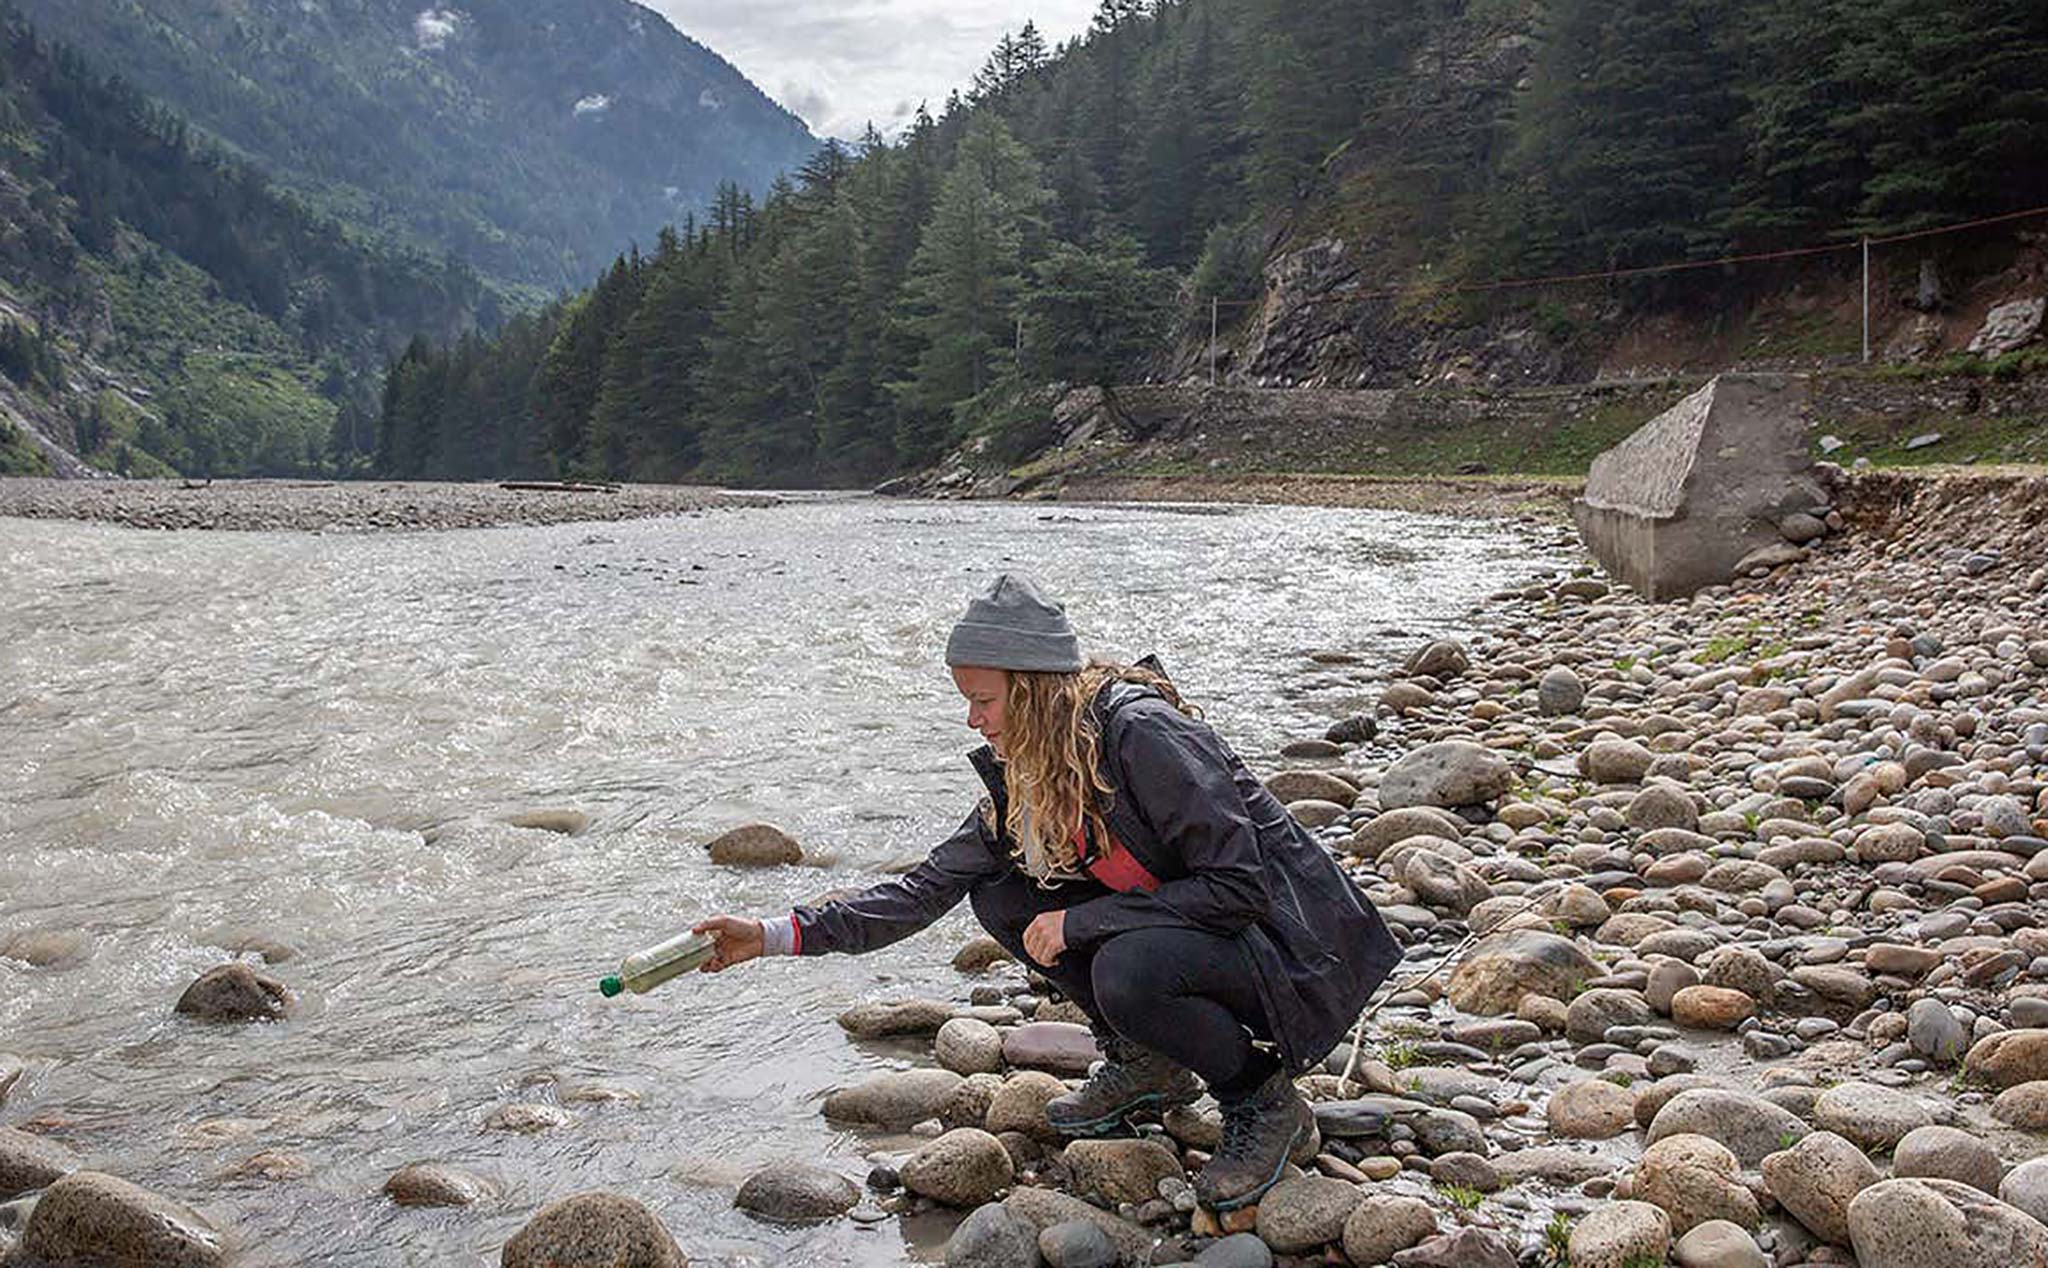 Nếu thả một cái chai nhựa xuống dòng sông, nó có thể trôi đi hàng ngàn cây số